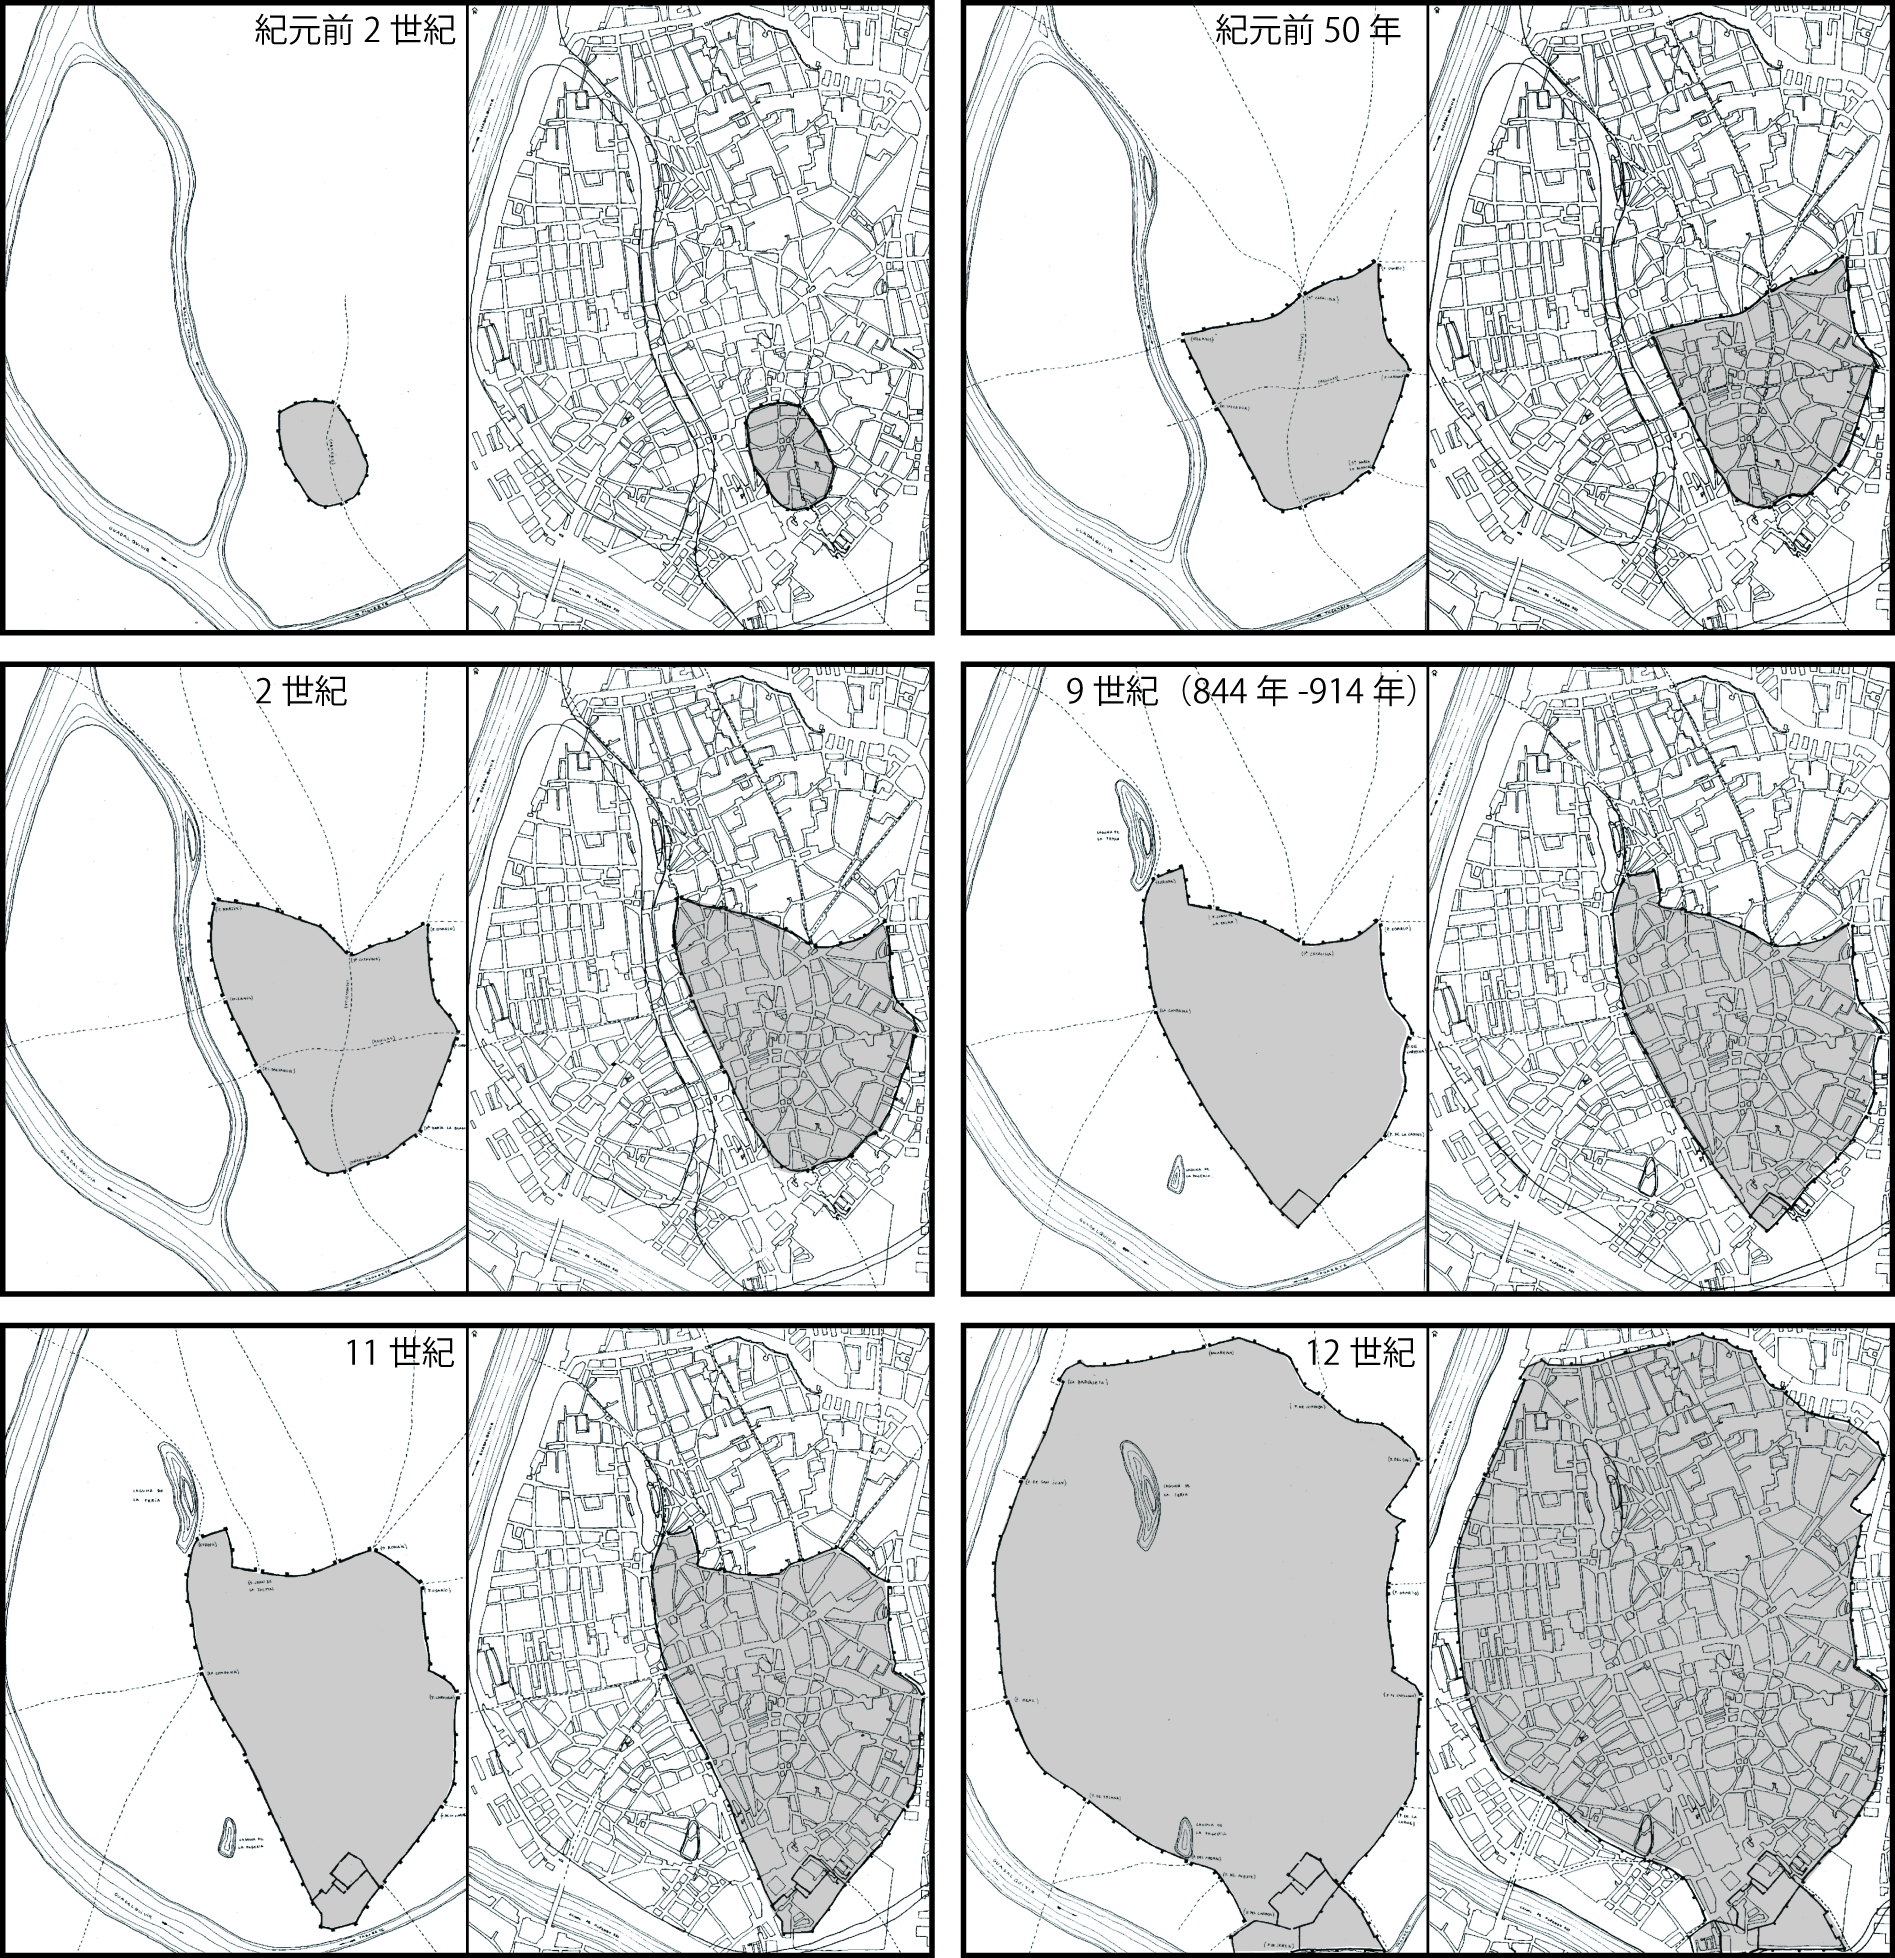 図2-2 セビージャ 市街地の発展を表す地図